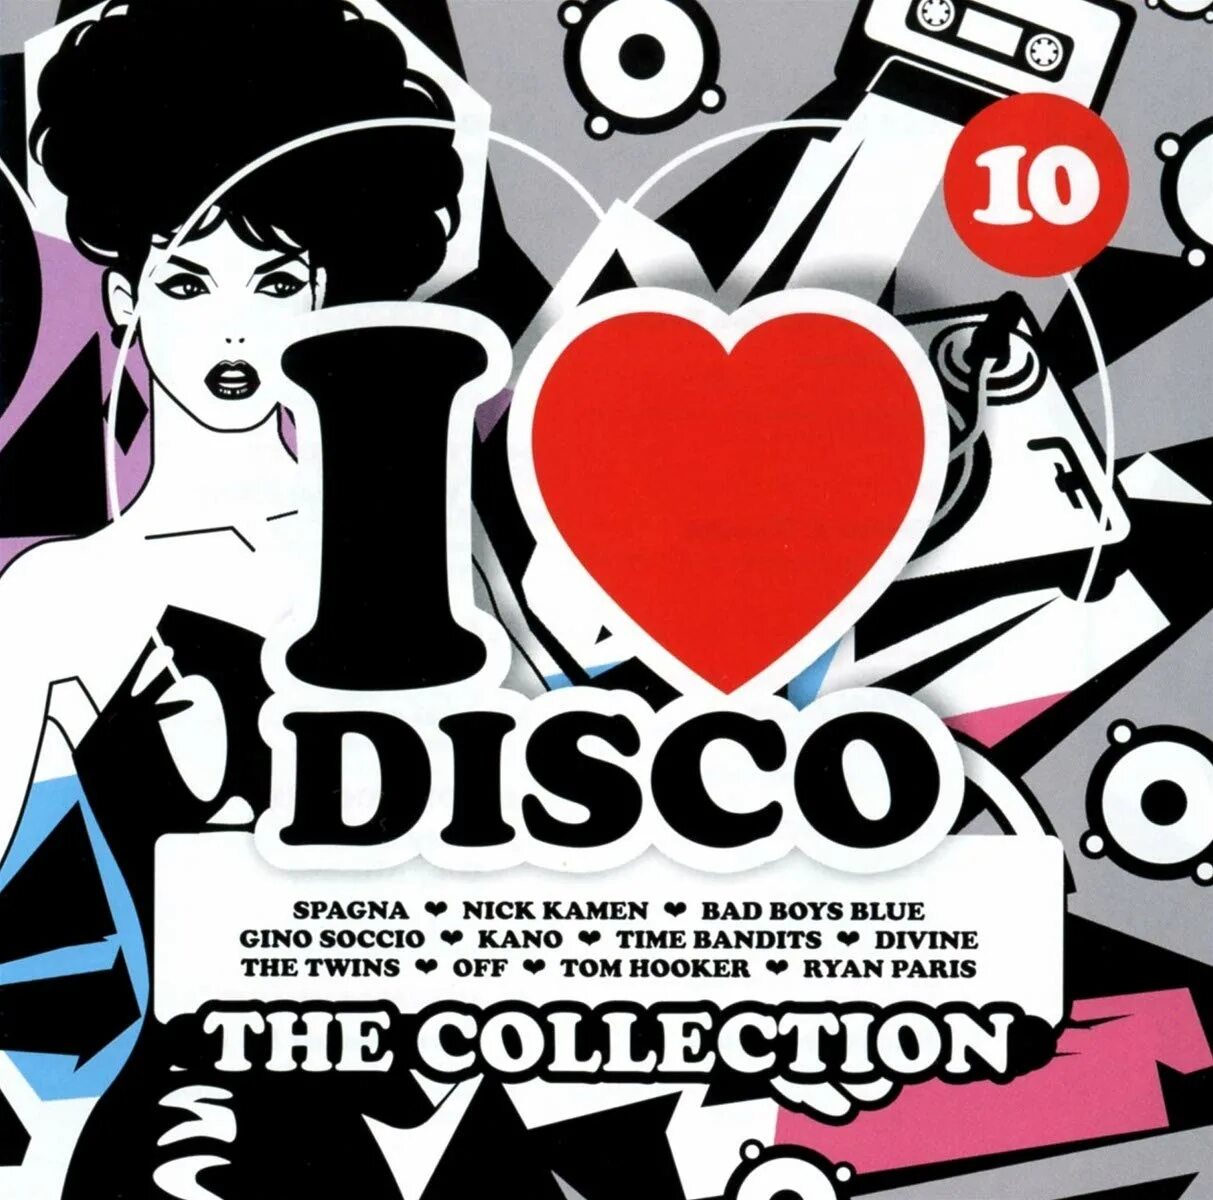 I Love Disco. Евро диско коллекция Vol 1. Картинки итало диско Love. Сборник диско на CD. Disco mix best